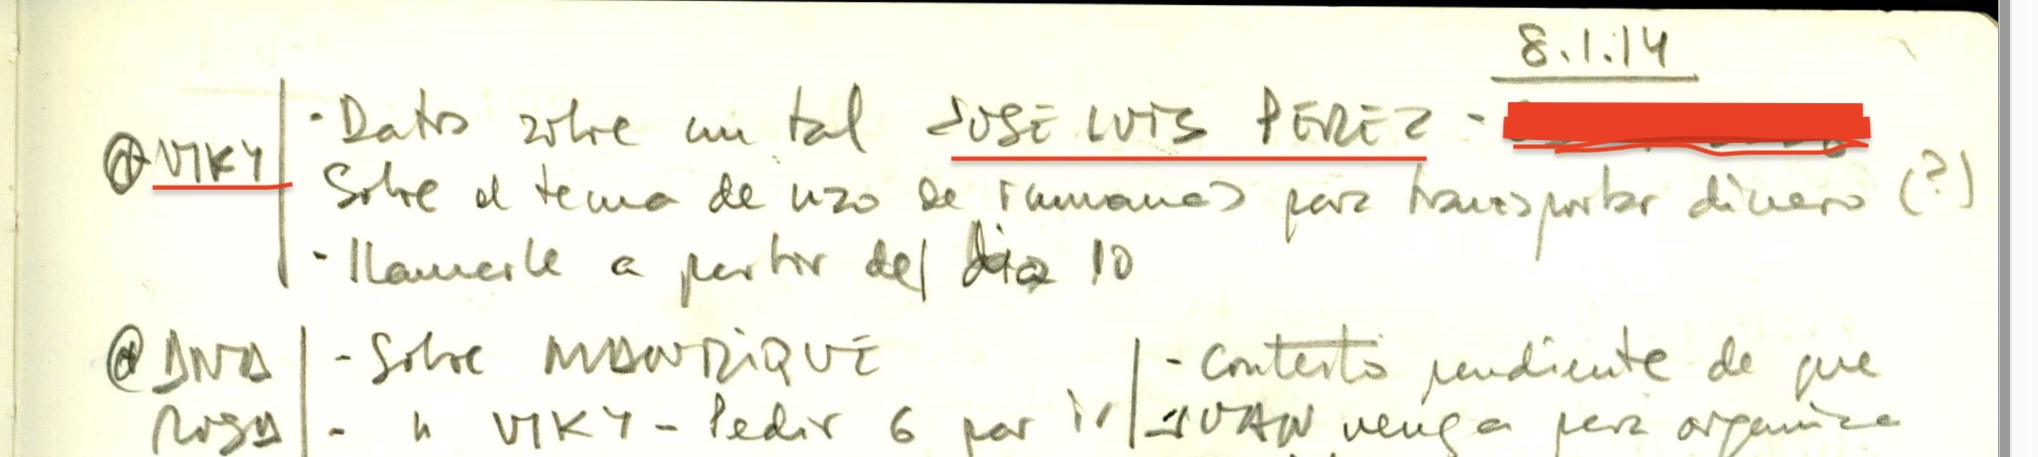 Part de l'agenda de Villarejo on destaca el 8 de gener que Vicky li proposa parlar amb Pérez sobre Rosell/Quico Sallés